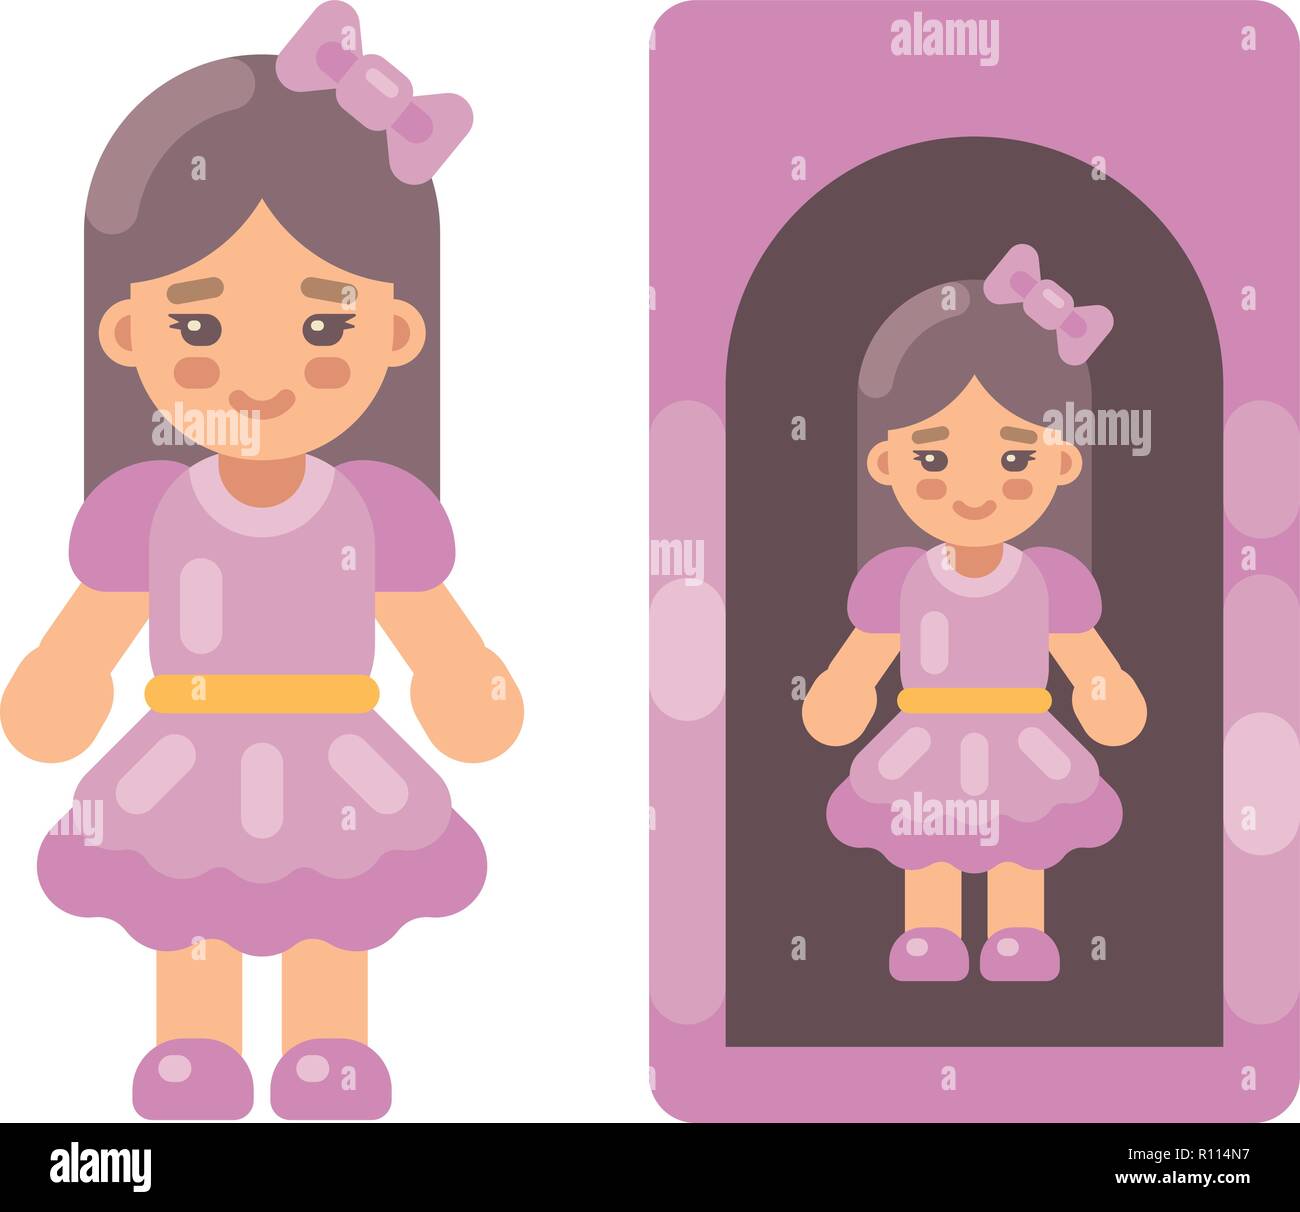 Süße Puppe in rosa Kleid in einer Box Flachbild-Symbol. Kleines Mädchen flachbild Abbildung Stock Vektor